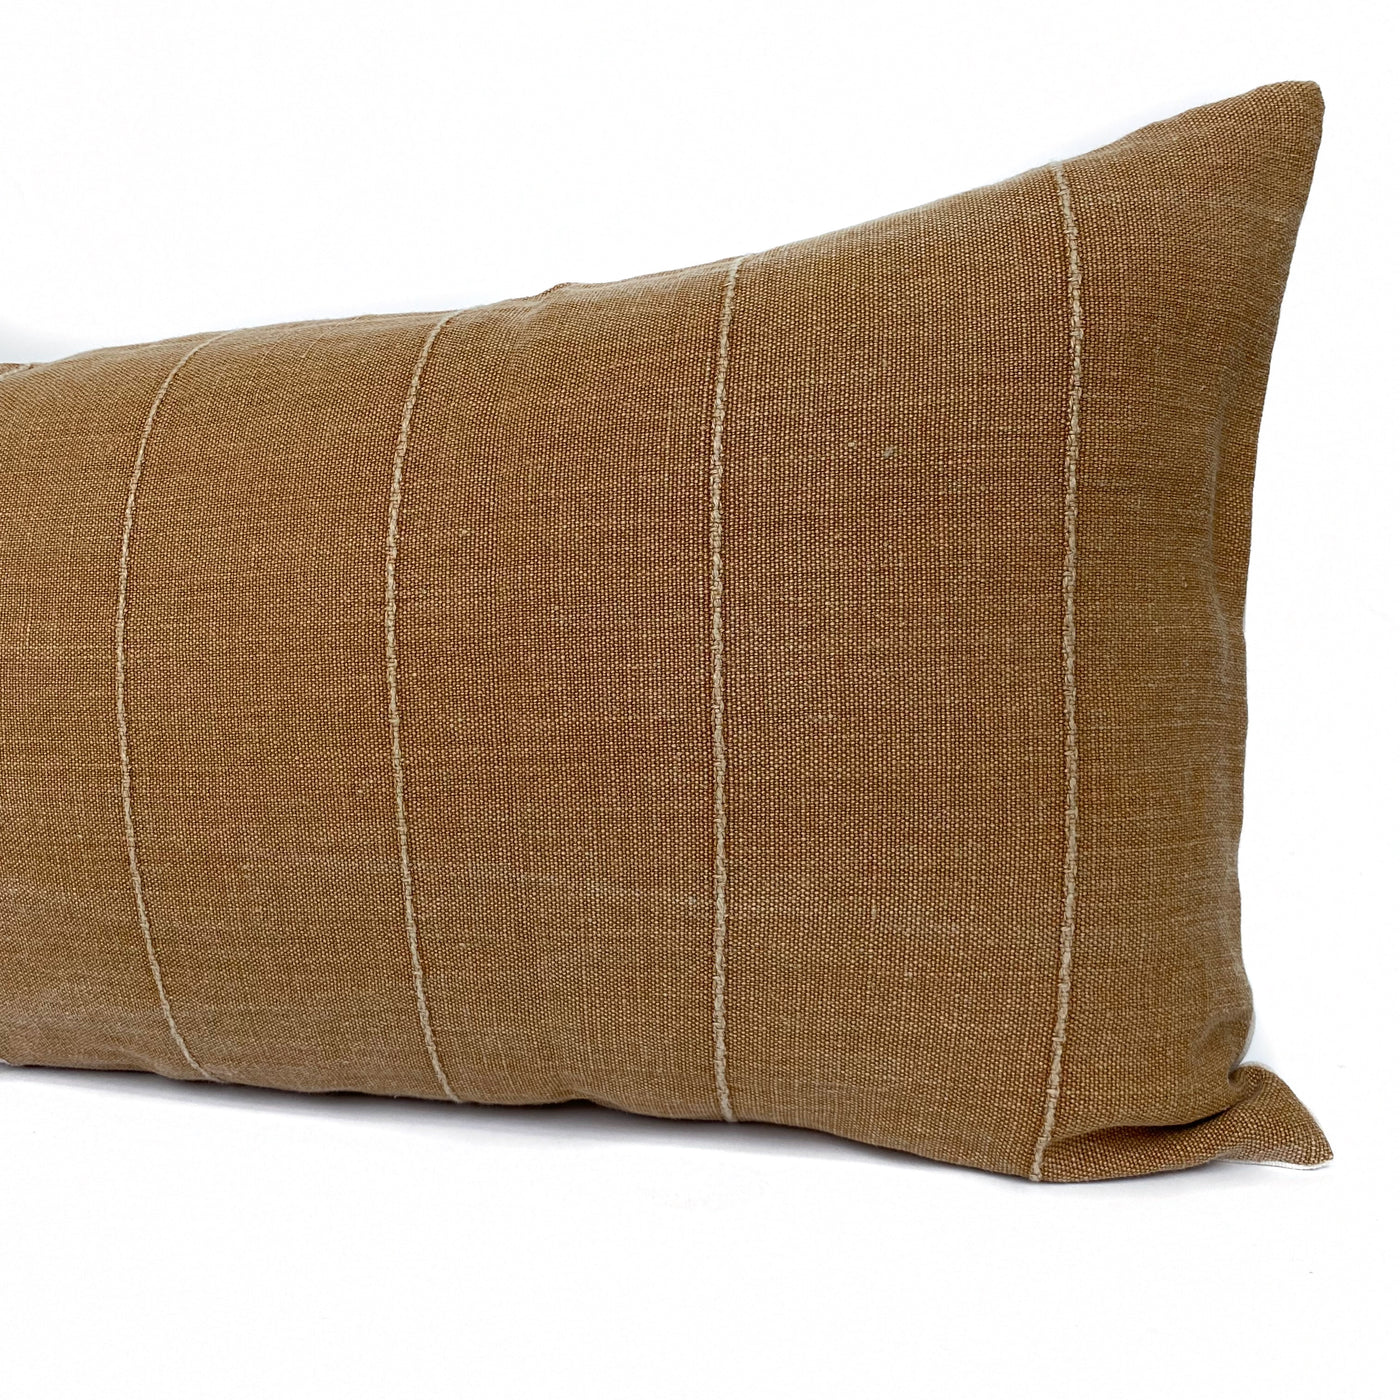 One Tribe Rose Gold Lumbar Pillow